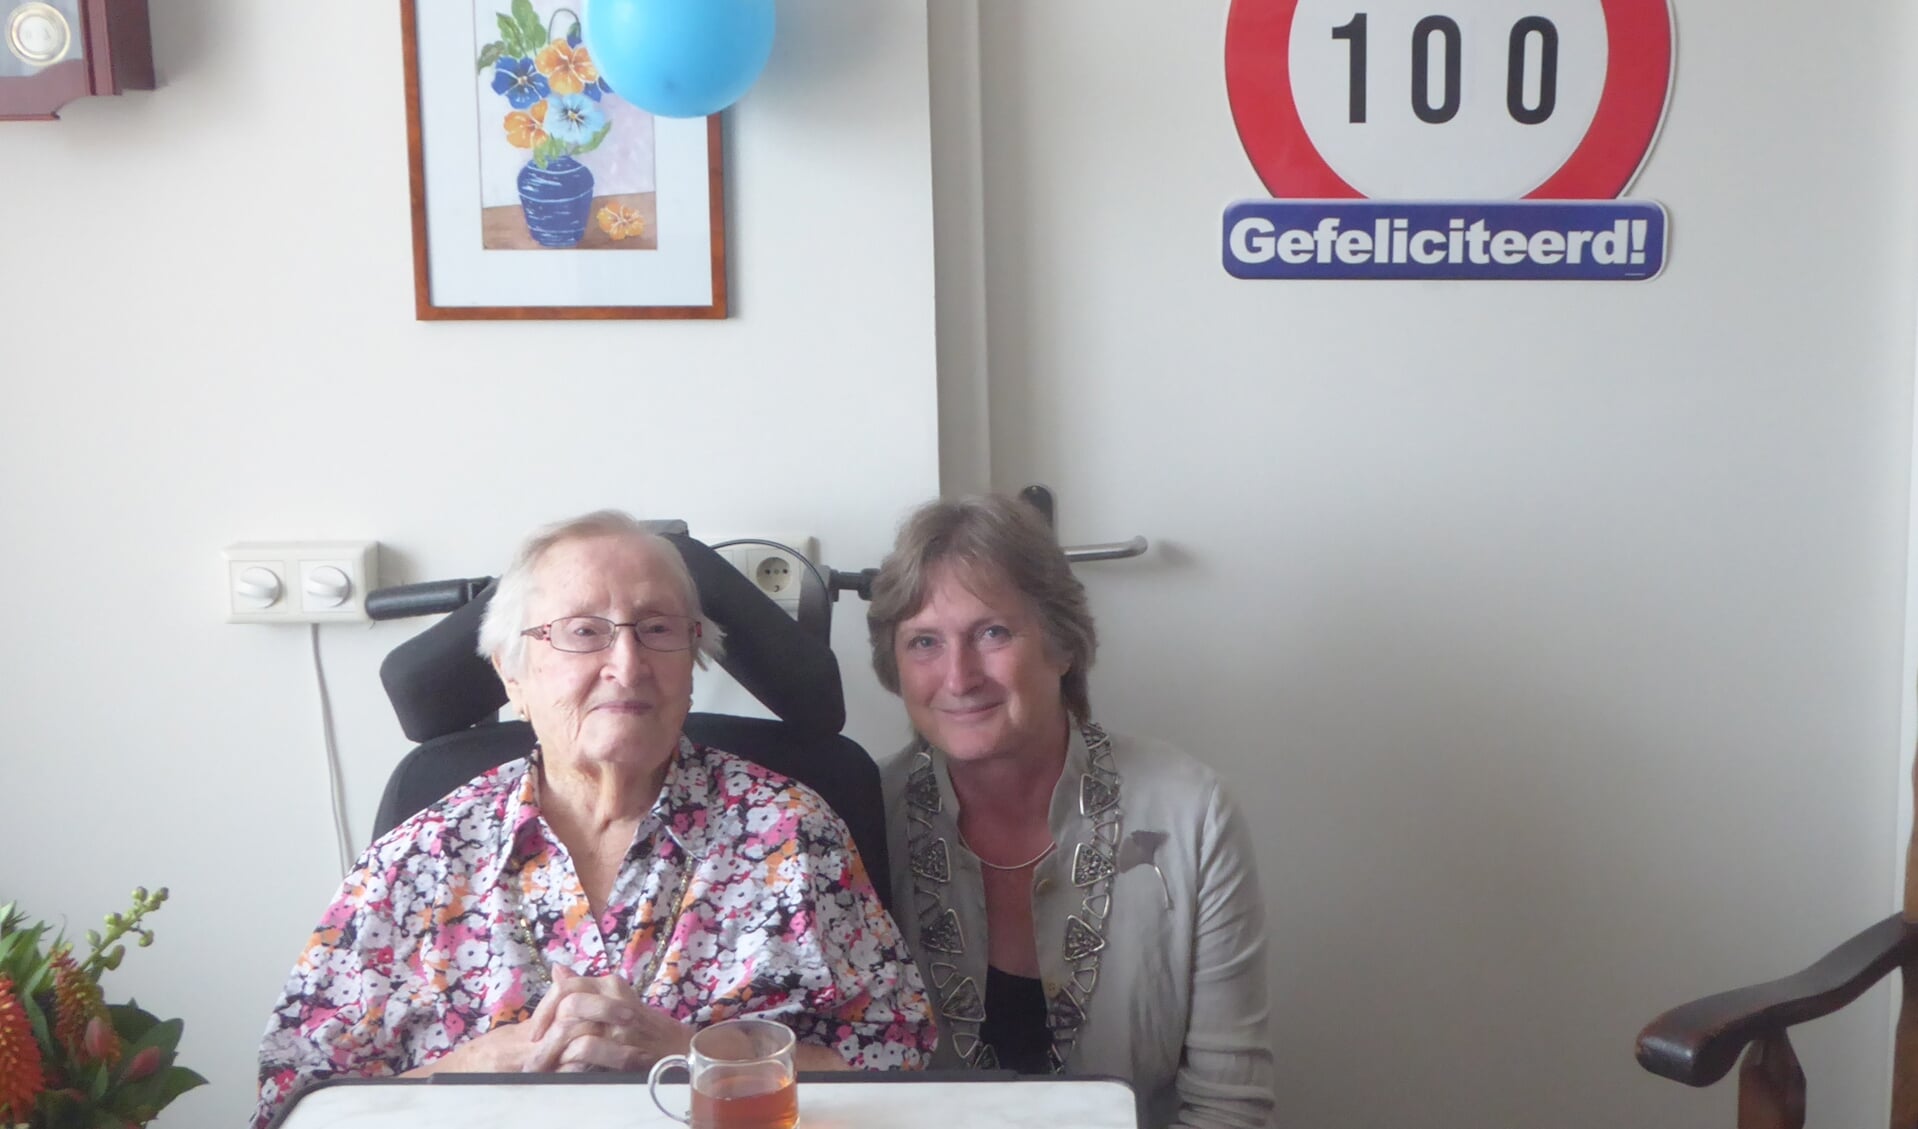 Mevrouw Varkevisser-Ruigrok kreeg felicitaties van de burgemeester voor haar 100e verjaardag. | Foto: Ina Verblaauw